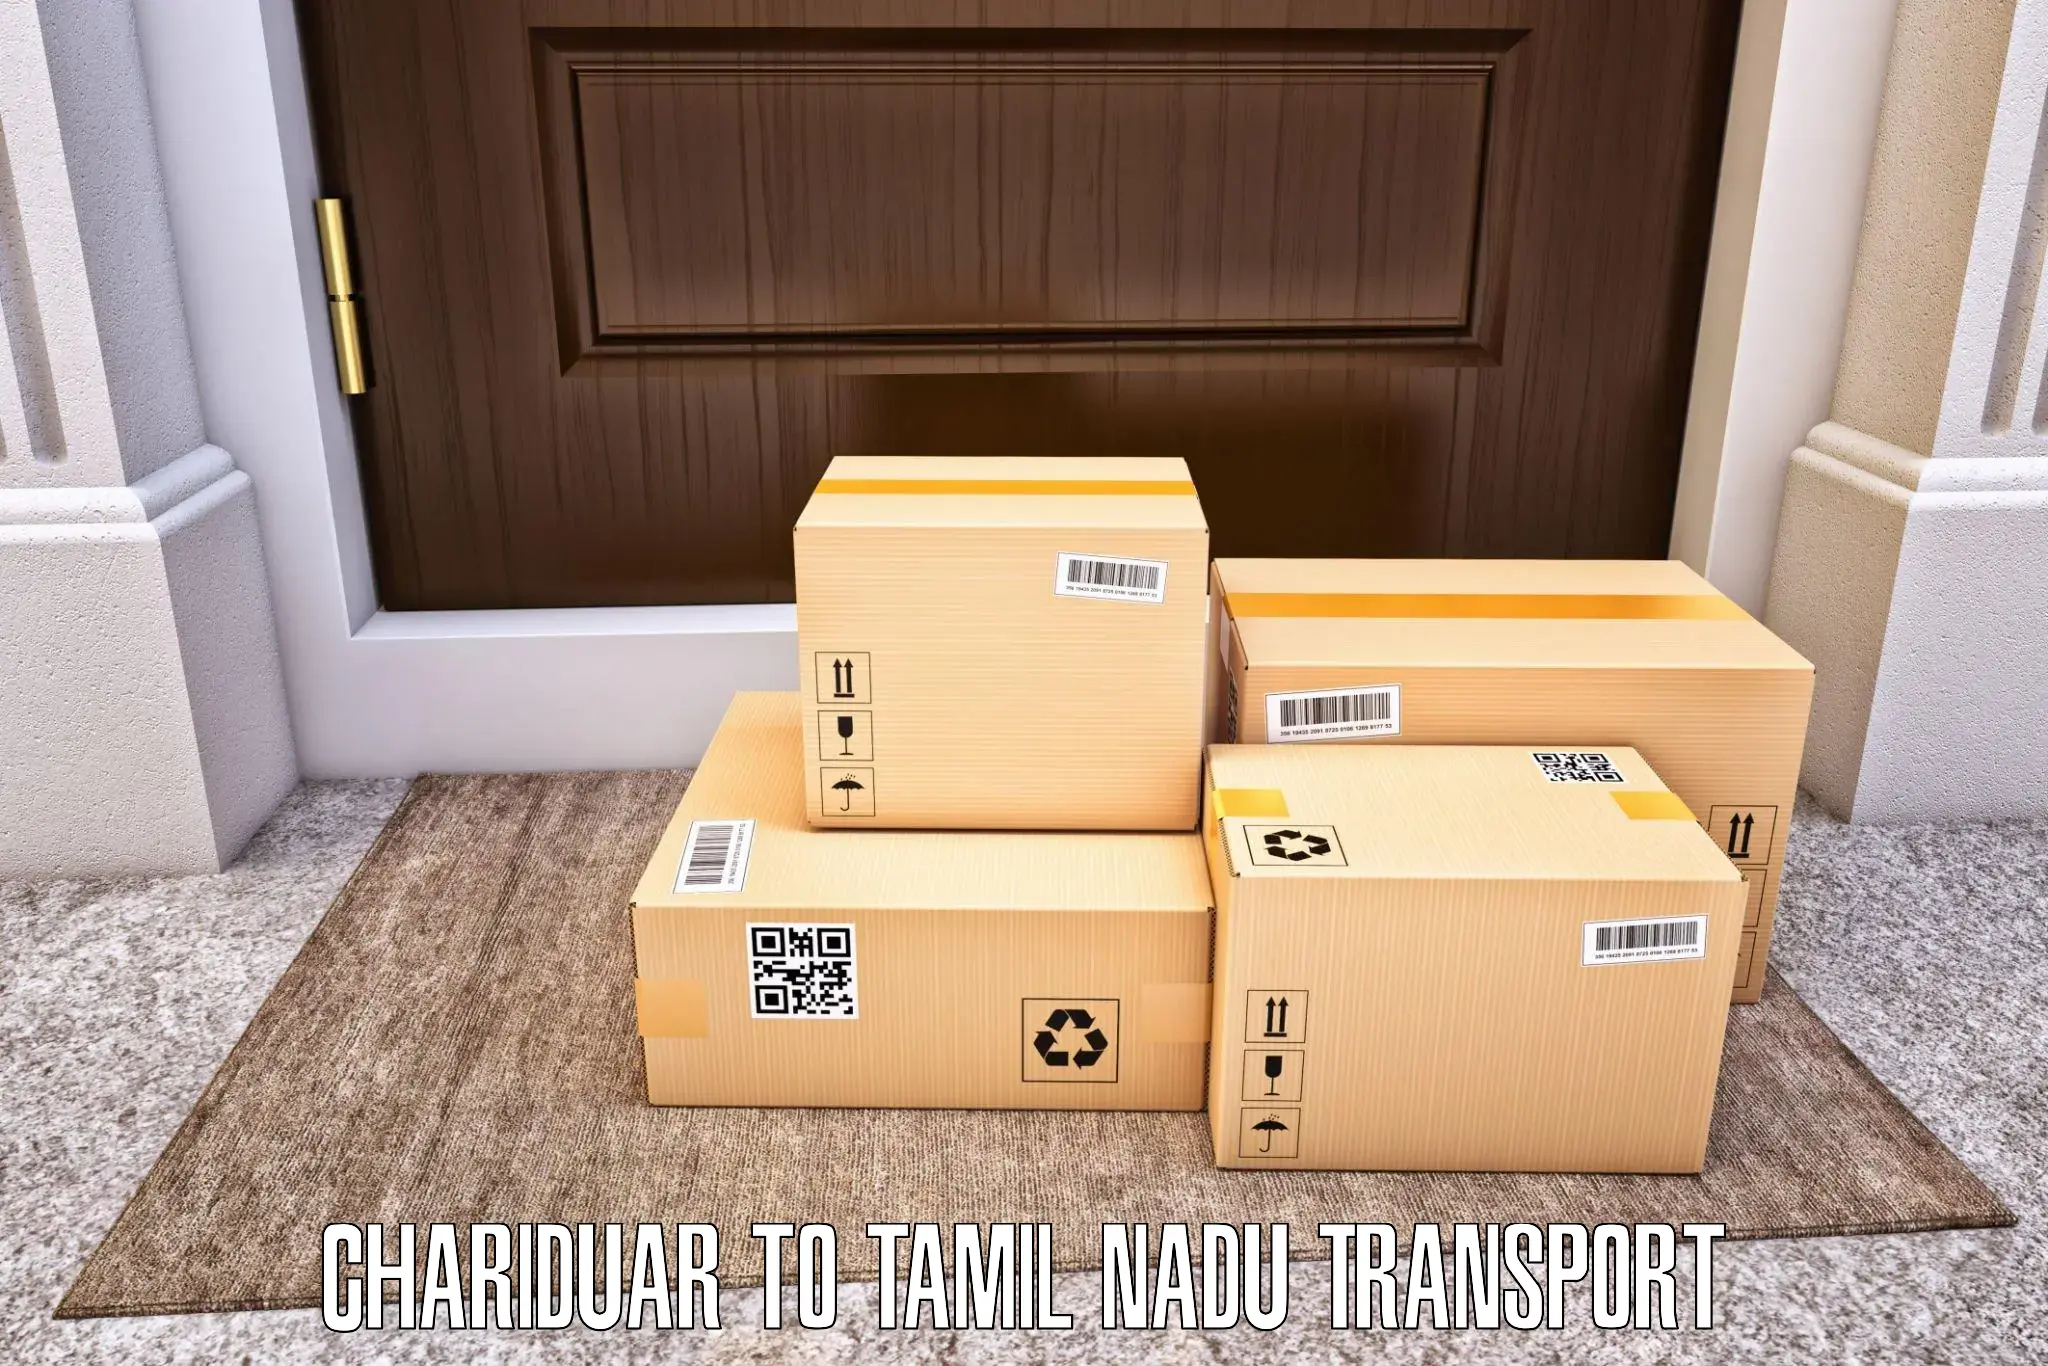 Door to door transport services Chariduar to Tamil Nadu